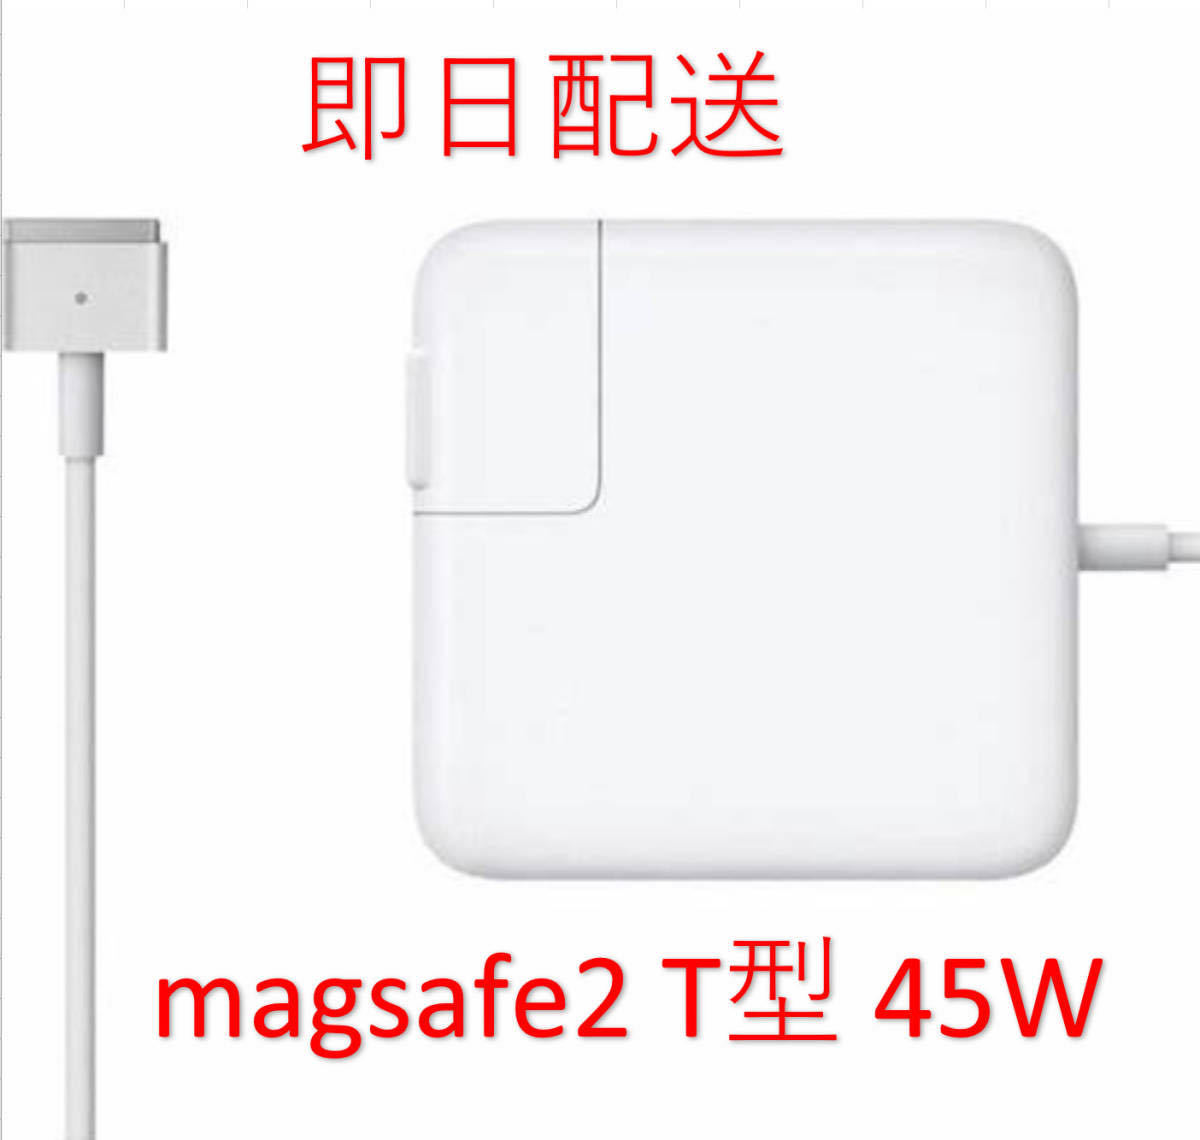 [ промышленные круги ][ бесплатная доставка ]T type Magsafe2 45W новый товар зарядное устройство MacBook Air 11 дюймовый 13 дюймовый 2012 2013 2014 2015 2017* источник питания AC адаптор 